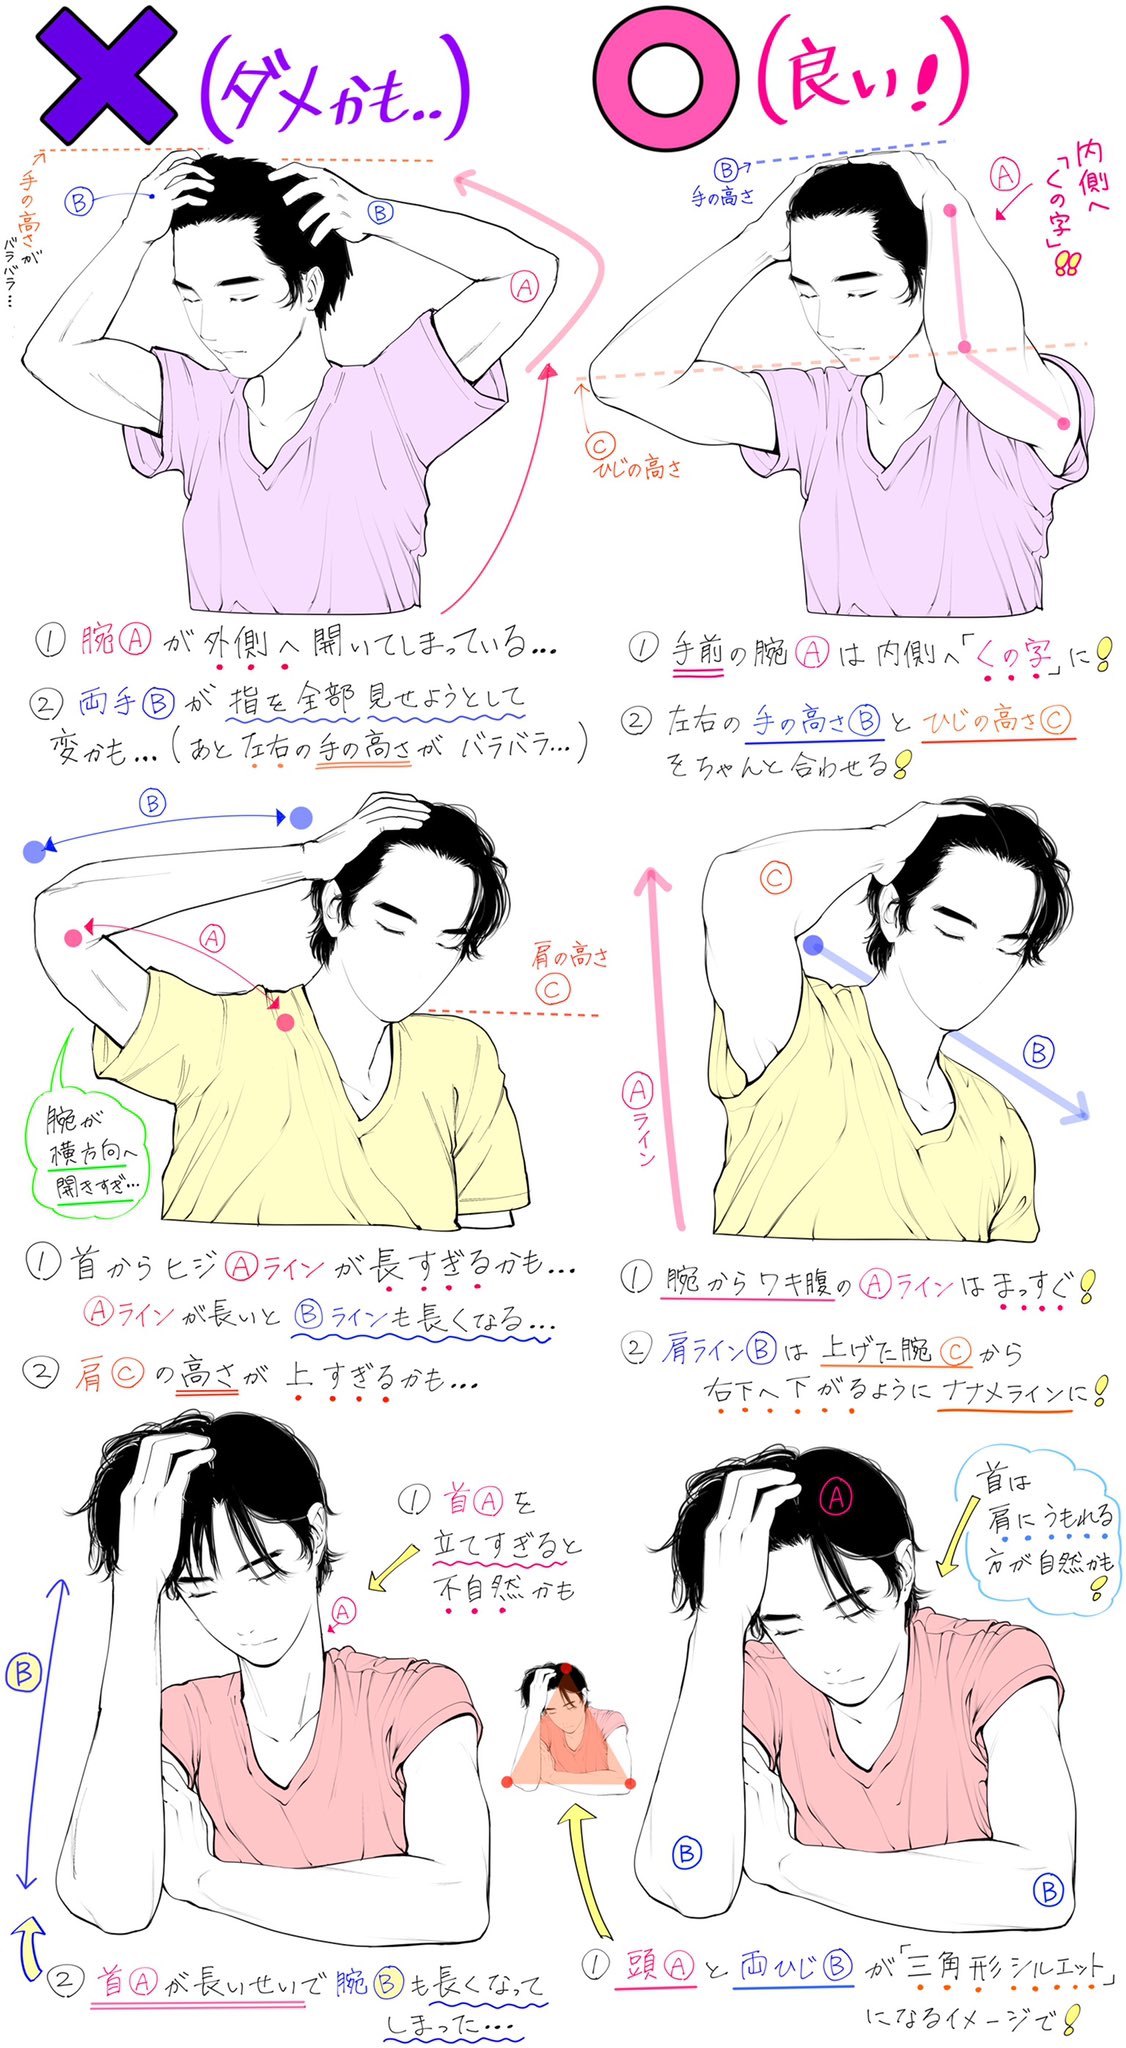 吉村拓也 イラスト講座 髪かきあげるポーズの描き方 かきあげる腕と体の向き が上達するための ダメなこと と 良いこと 全12パターンの比較解説です T Co Flmdjtrrc2 Twitter